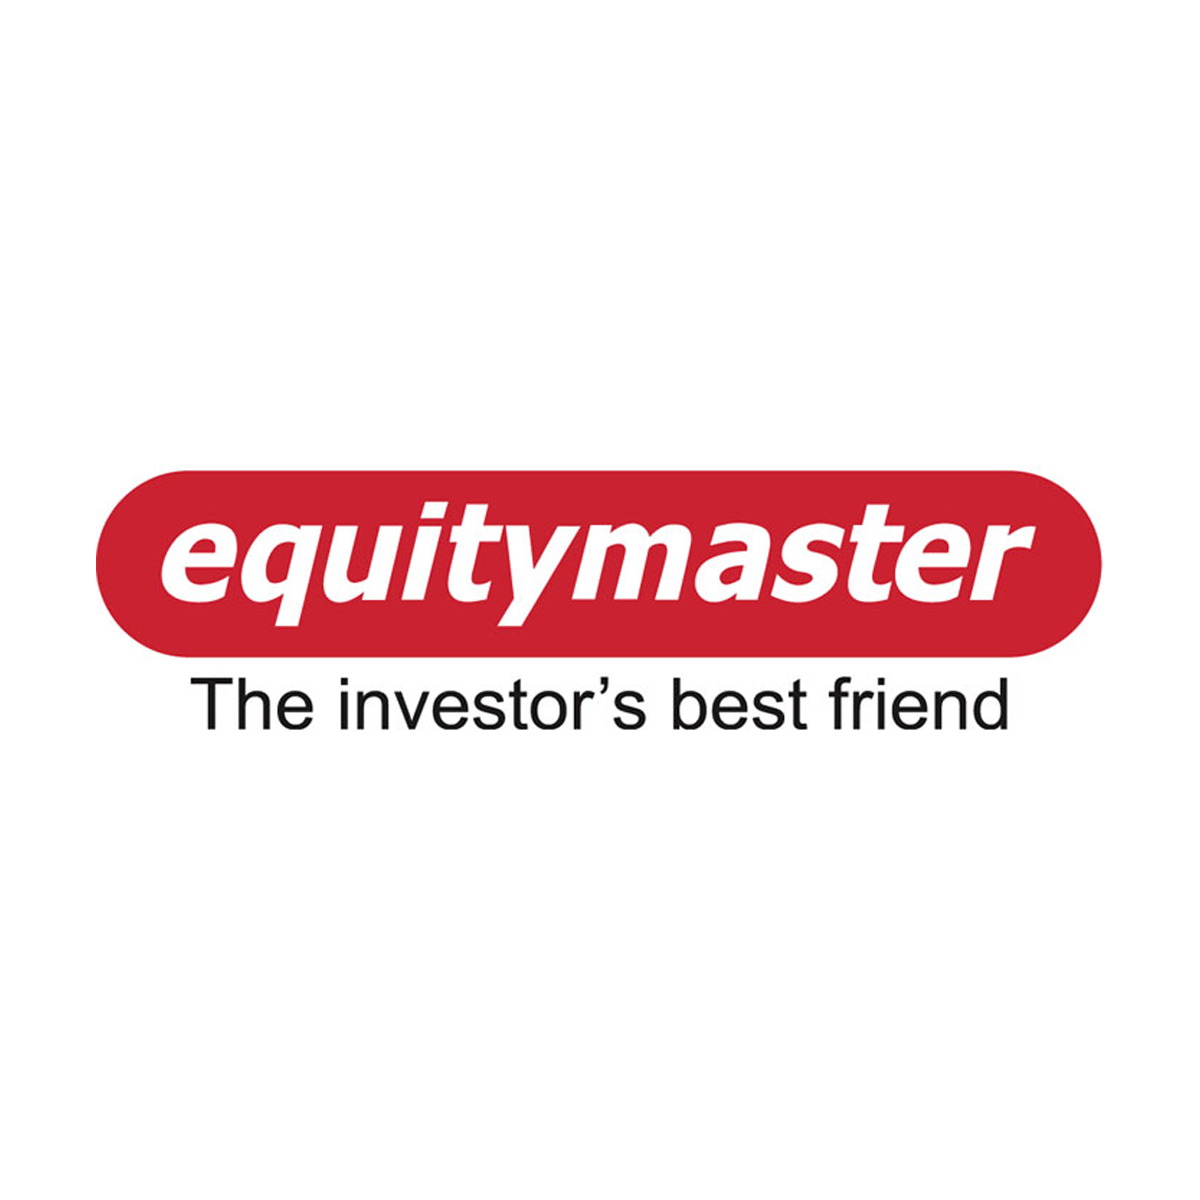 Equitymaster Ấn Độ – Trung bình